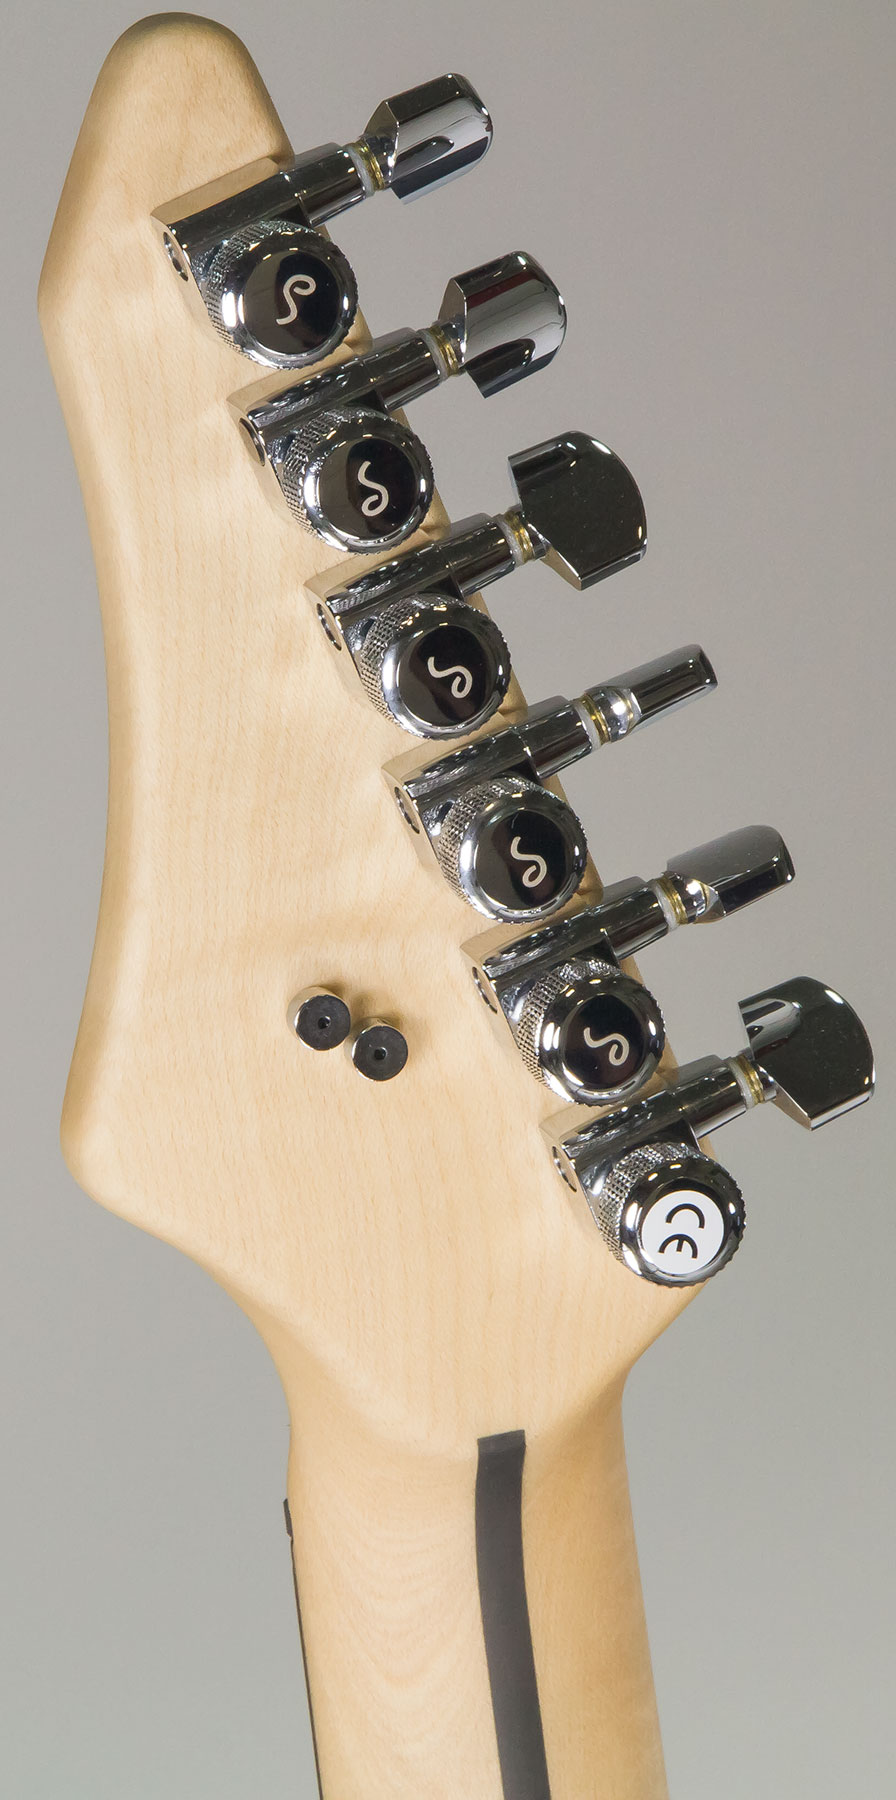 Vigier Excalibur Indus Hh Trem Rw - Textured Black - Guitare Électrique Double Cut - Variation 5